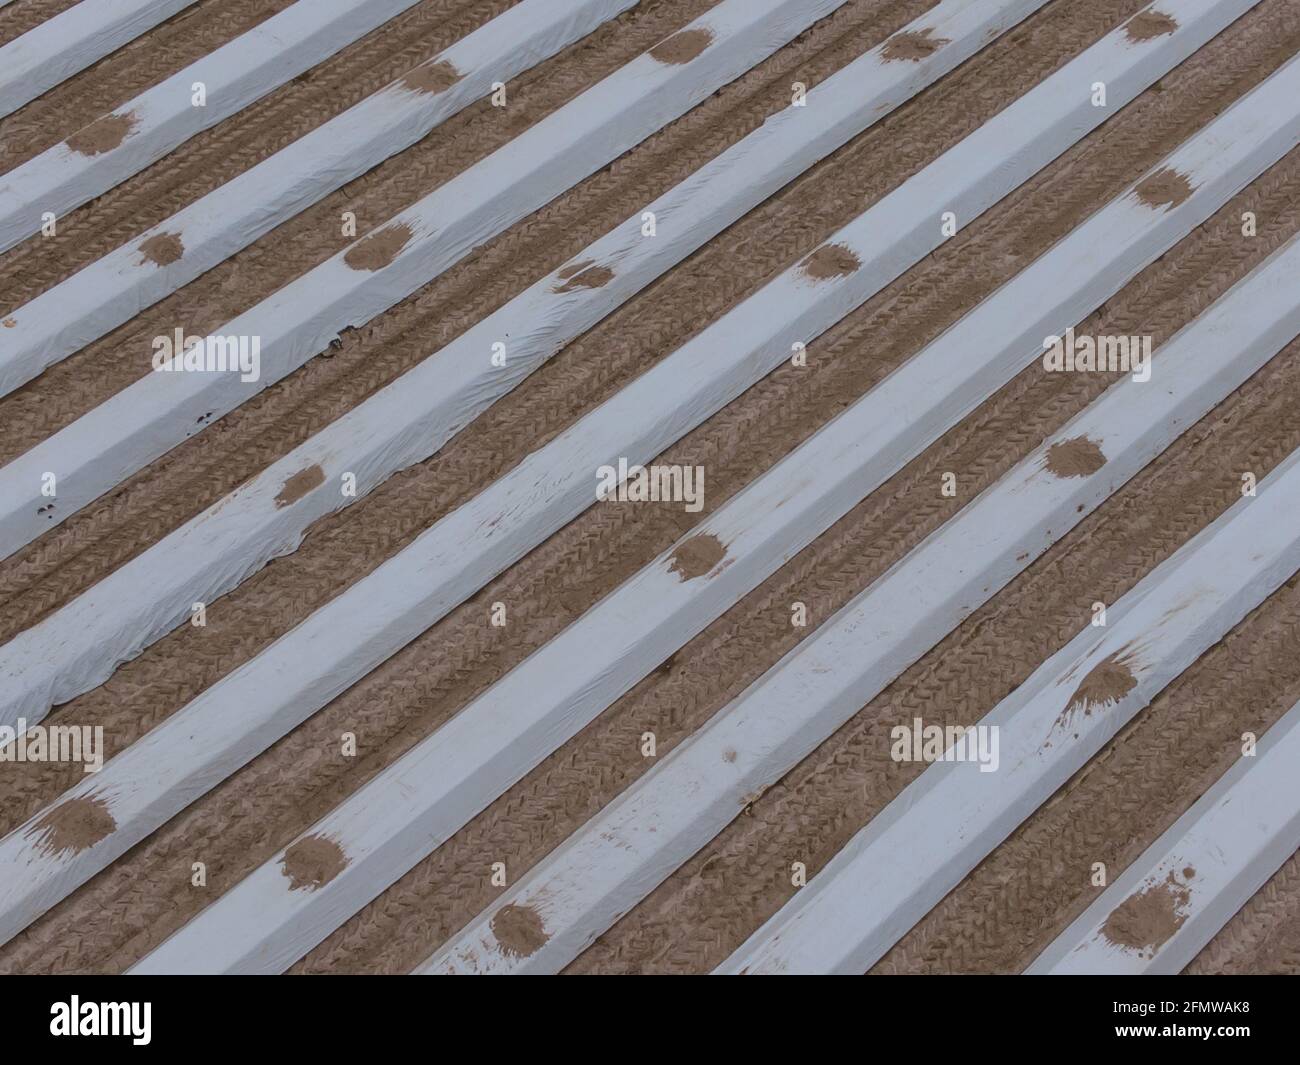 Spargelfeld fotografiert mit einer Drohne, interessante Ansicht der verschiedenen Spargelreihen, die ein Muster bilden, Nordrhein-Westfalen, Deutschland Stockfoto